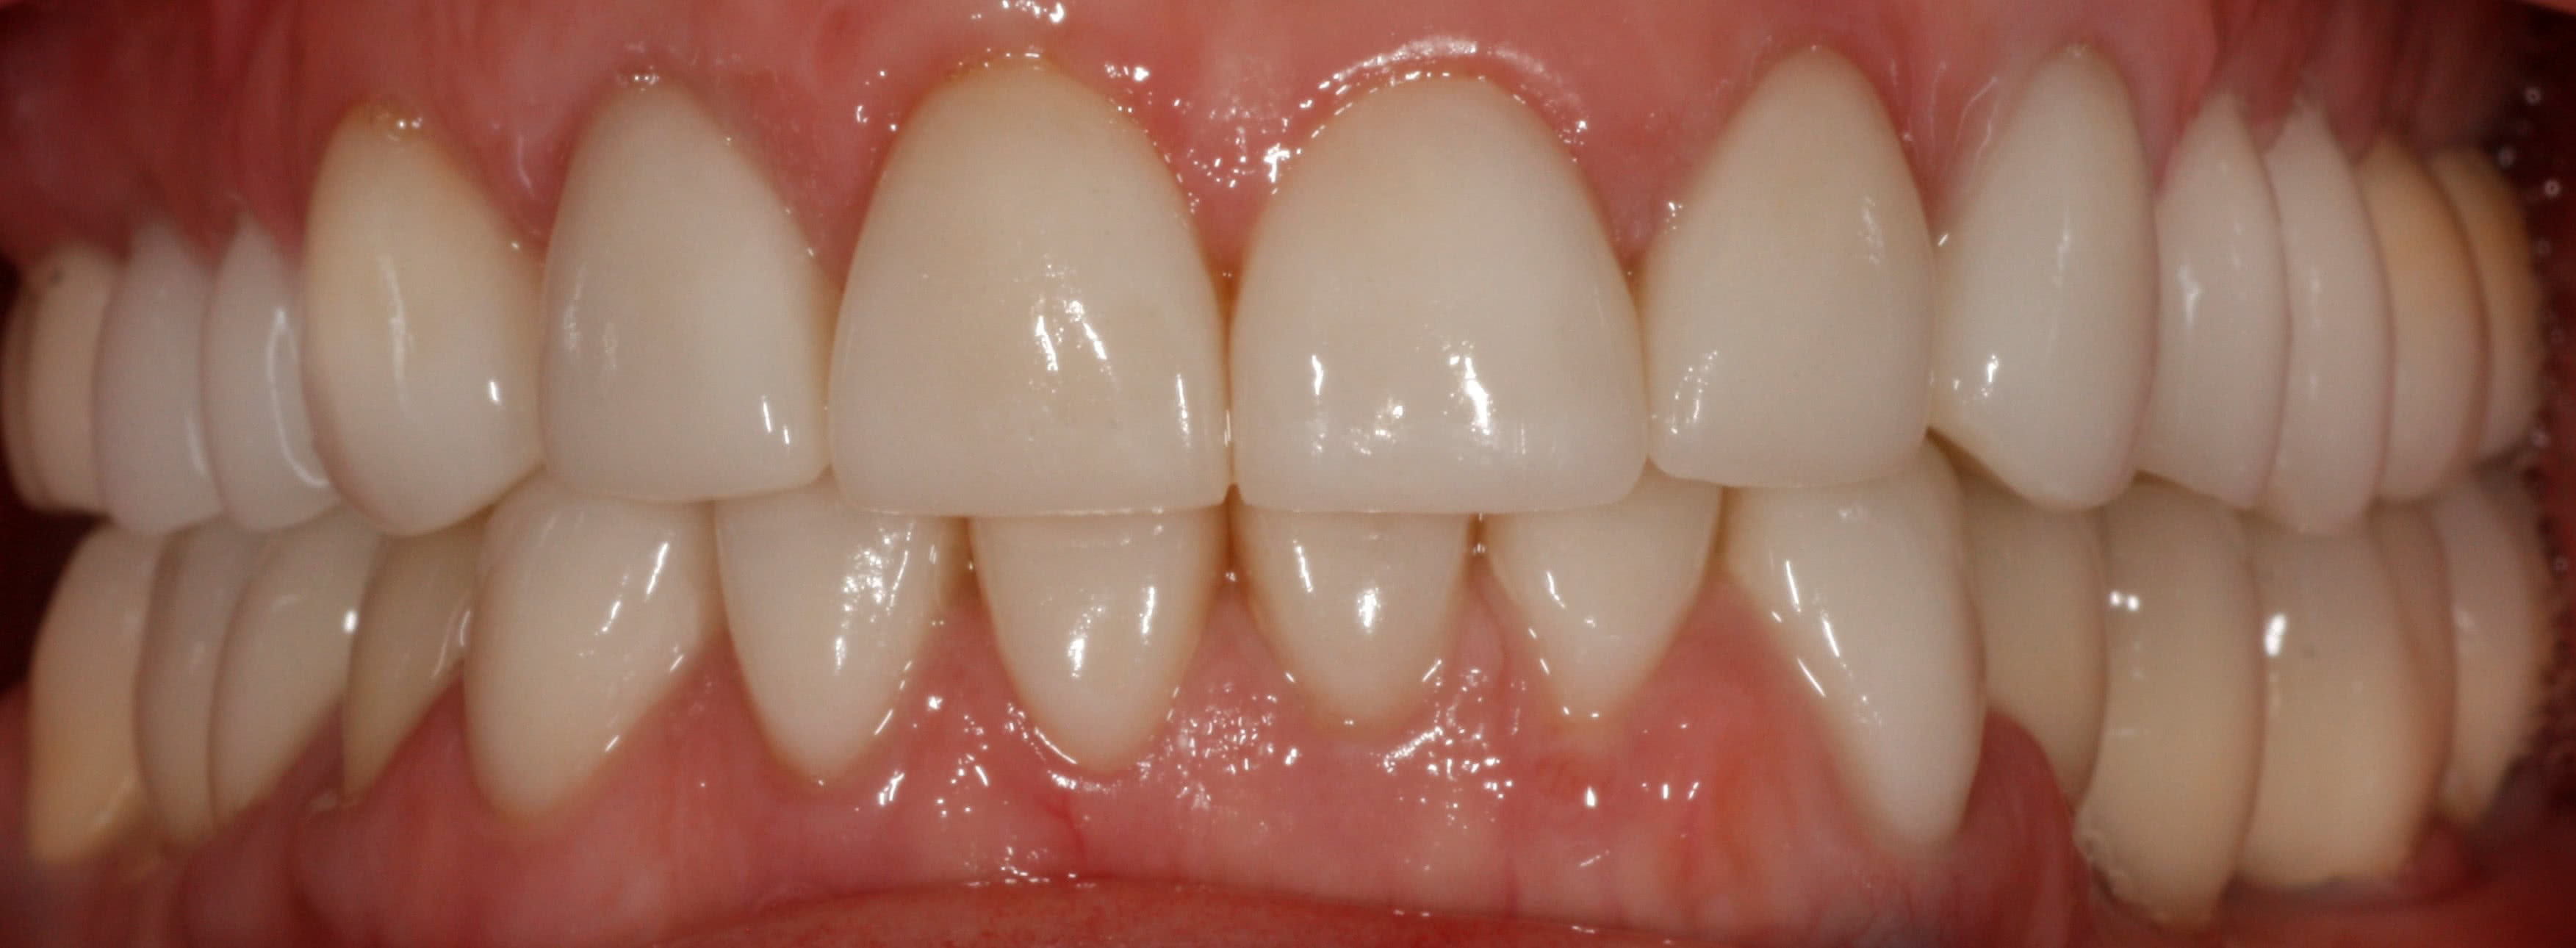 Зубы до процедуры Работы протезирование на имплантатах